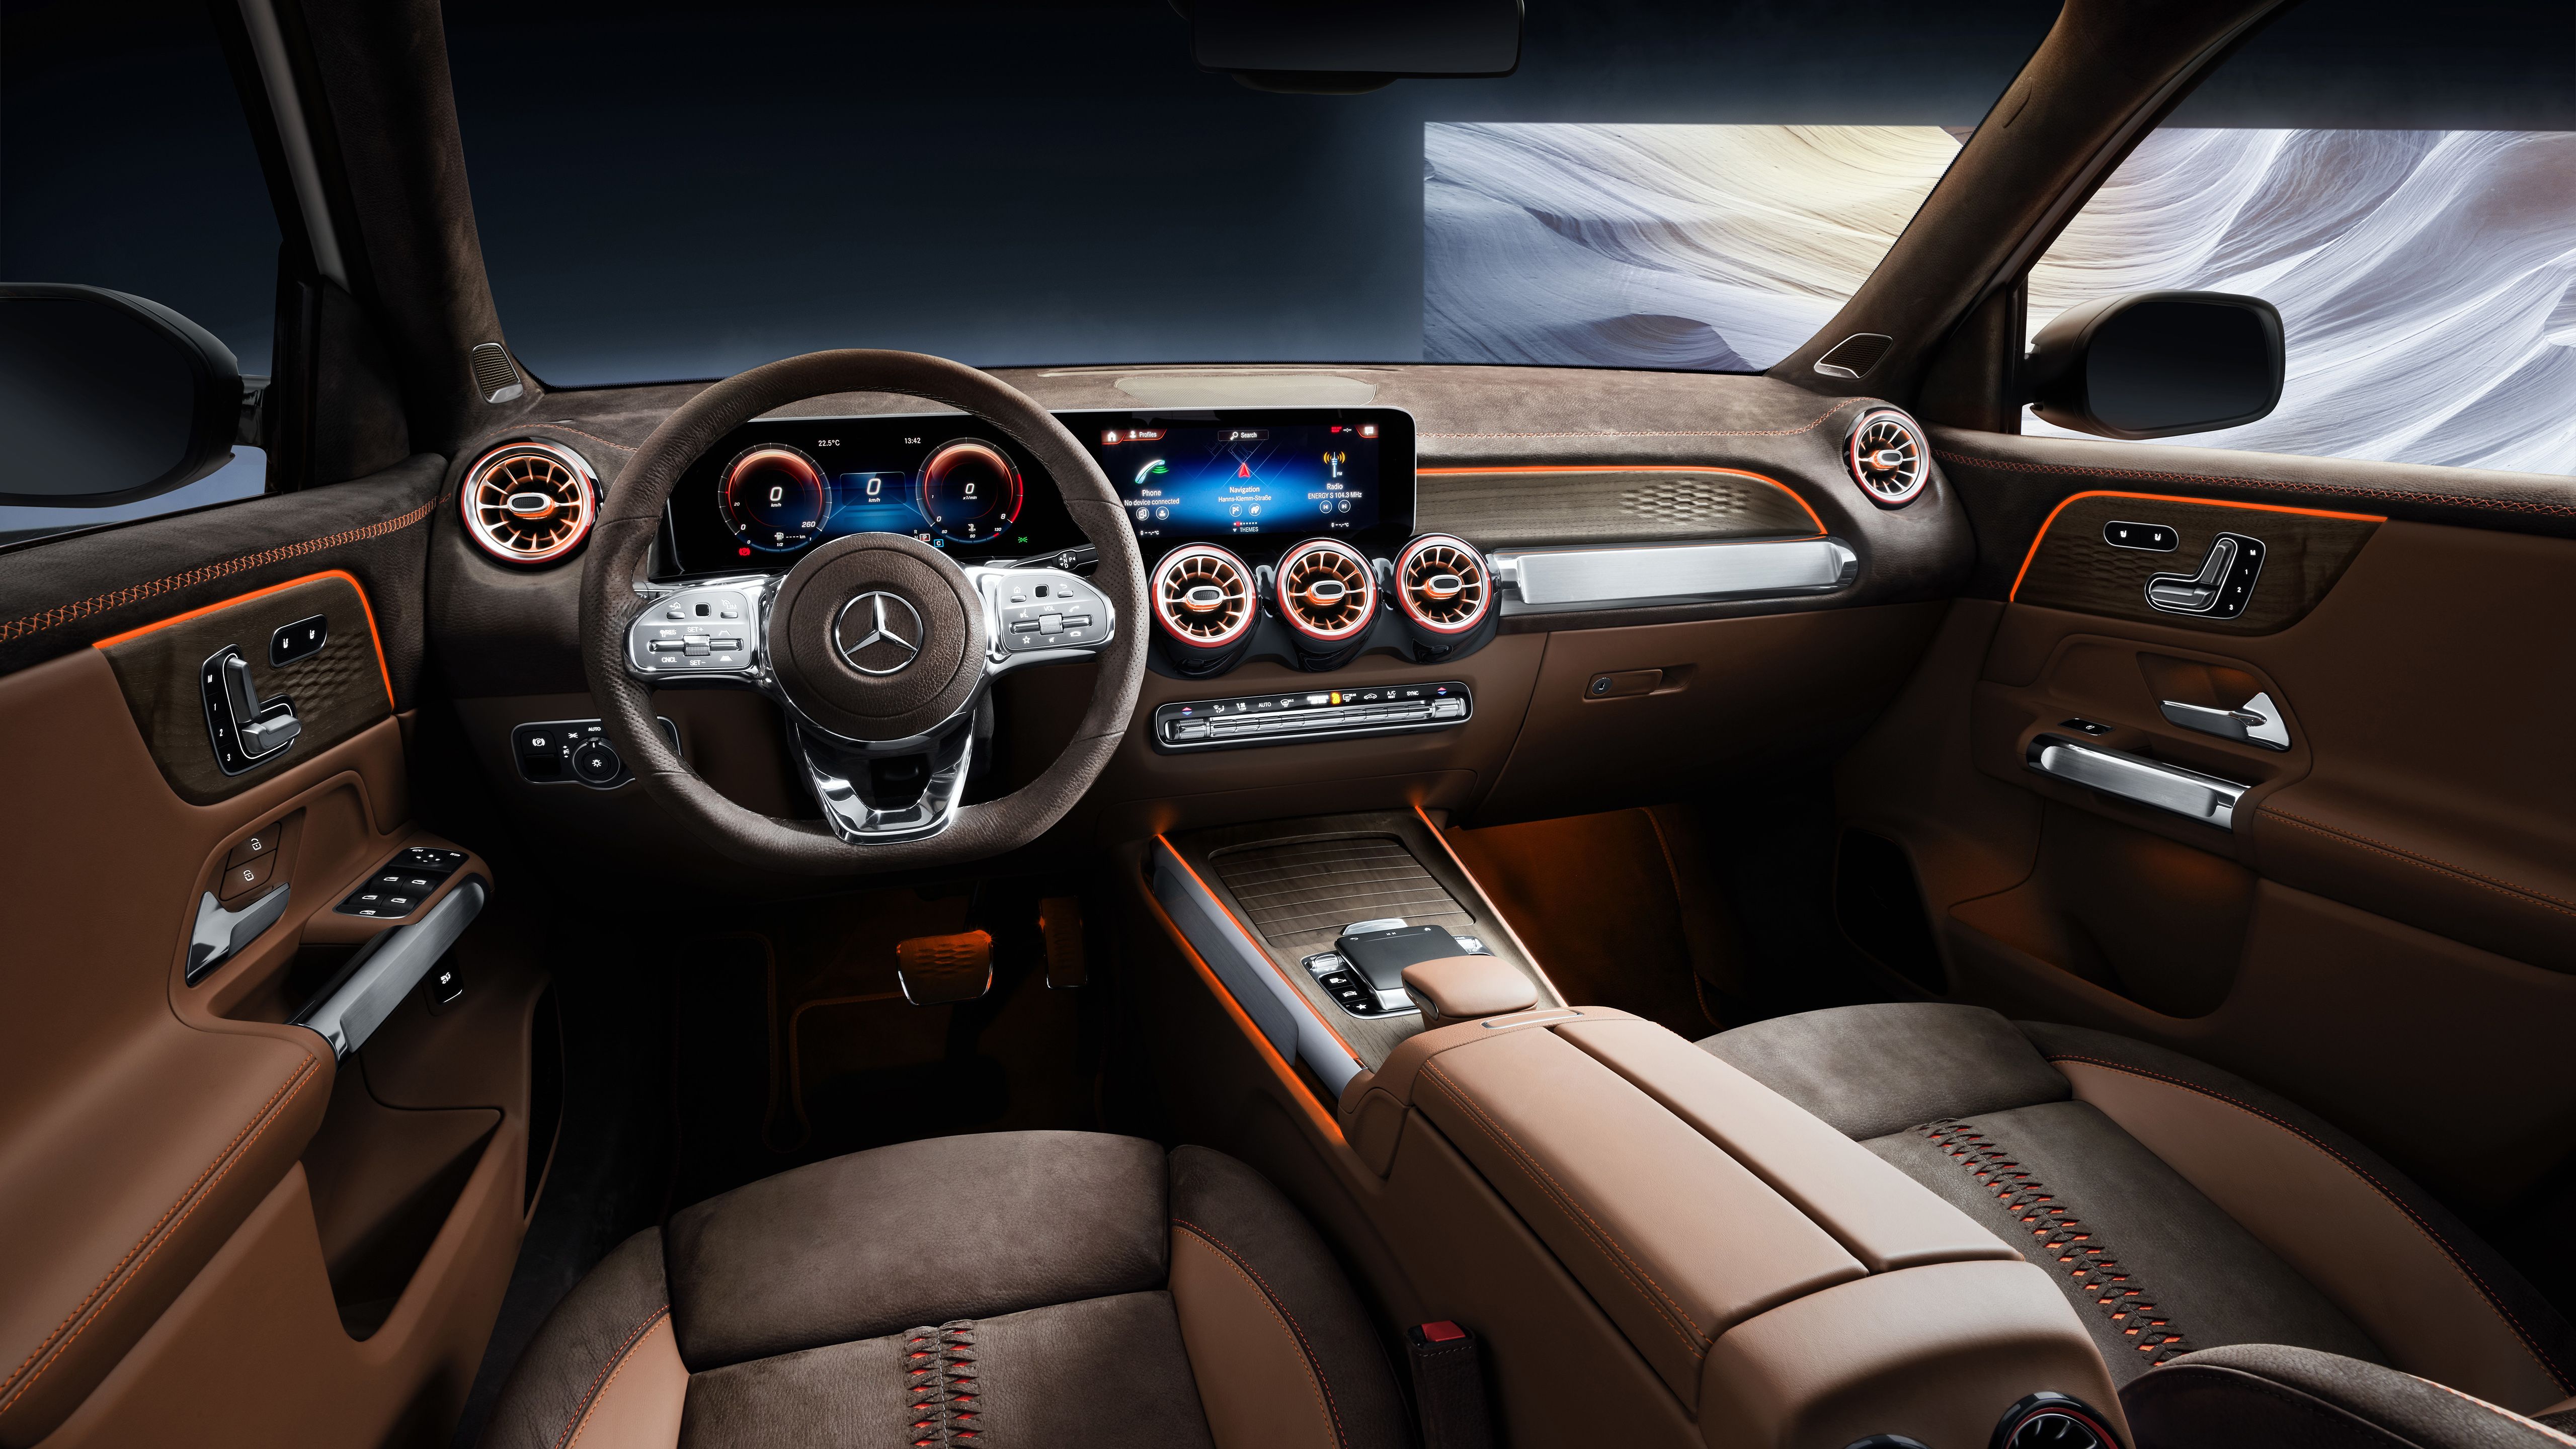 Mercedes Benz Concept GLB 2019 5K Interior Wallpaper. HD Car Wallpaper